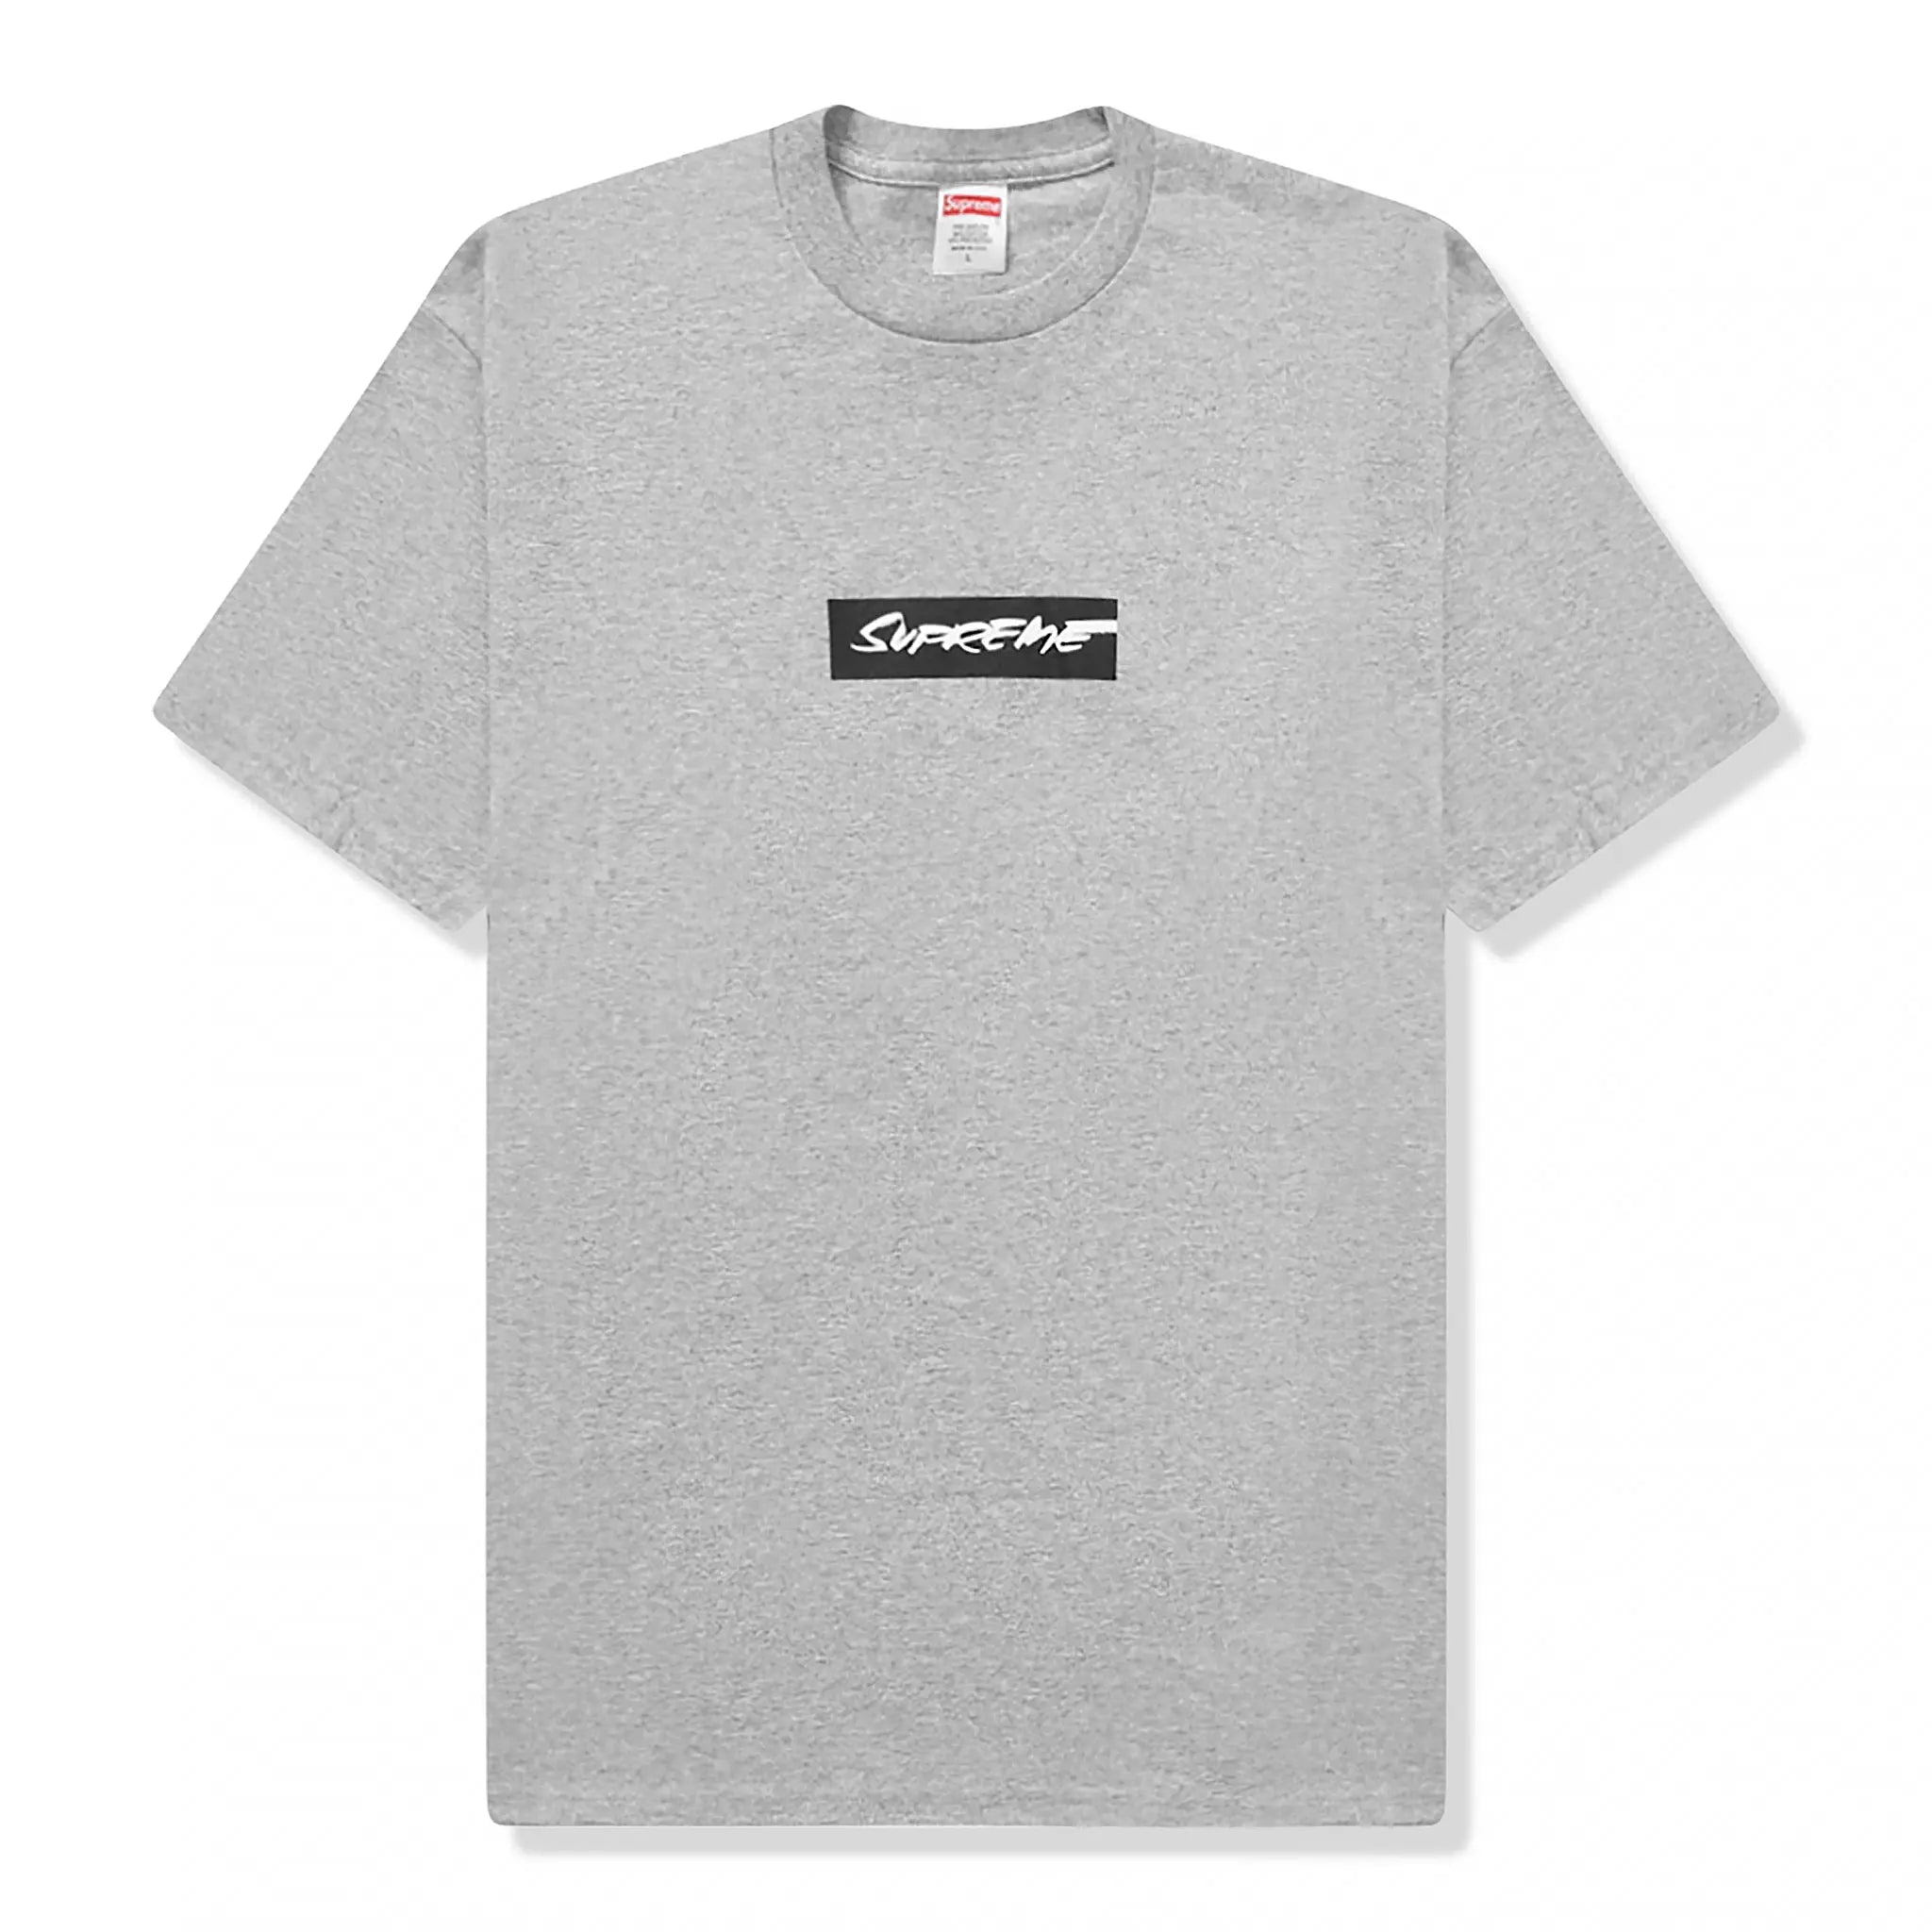 Front view of Supreme Futura Box Logo Grey T Shirt